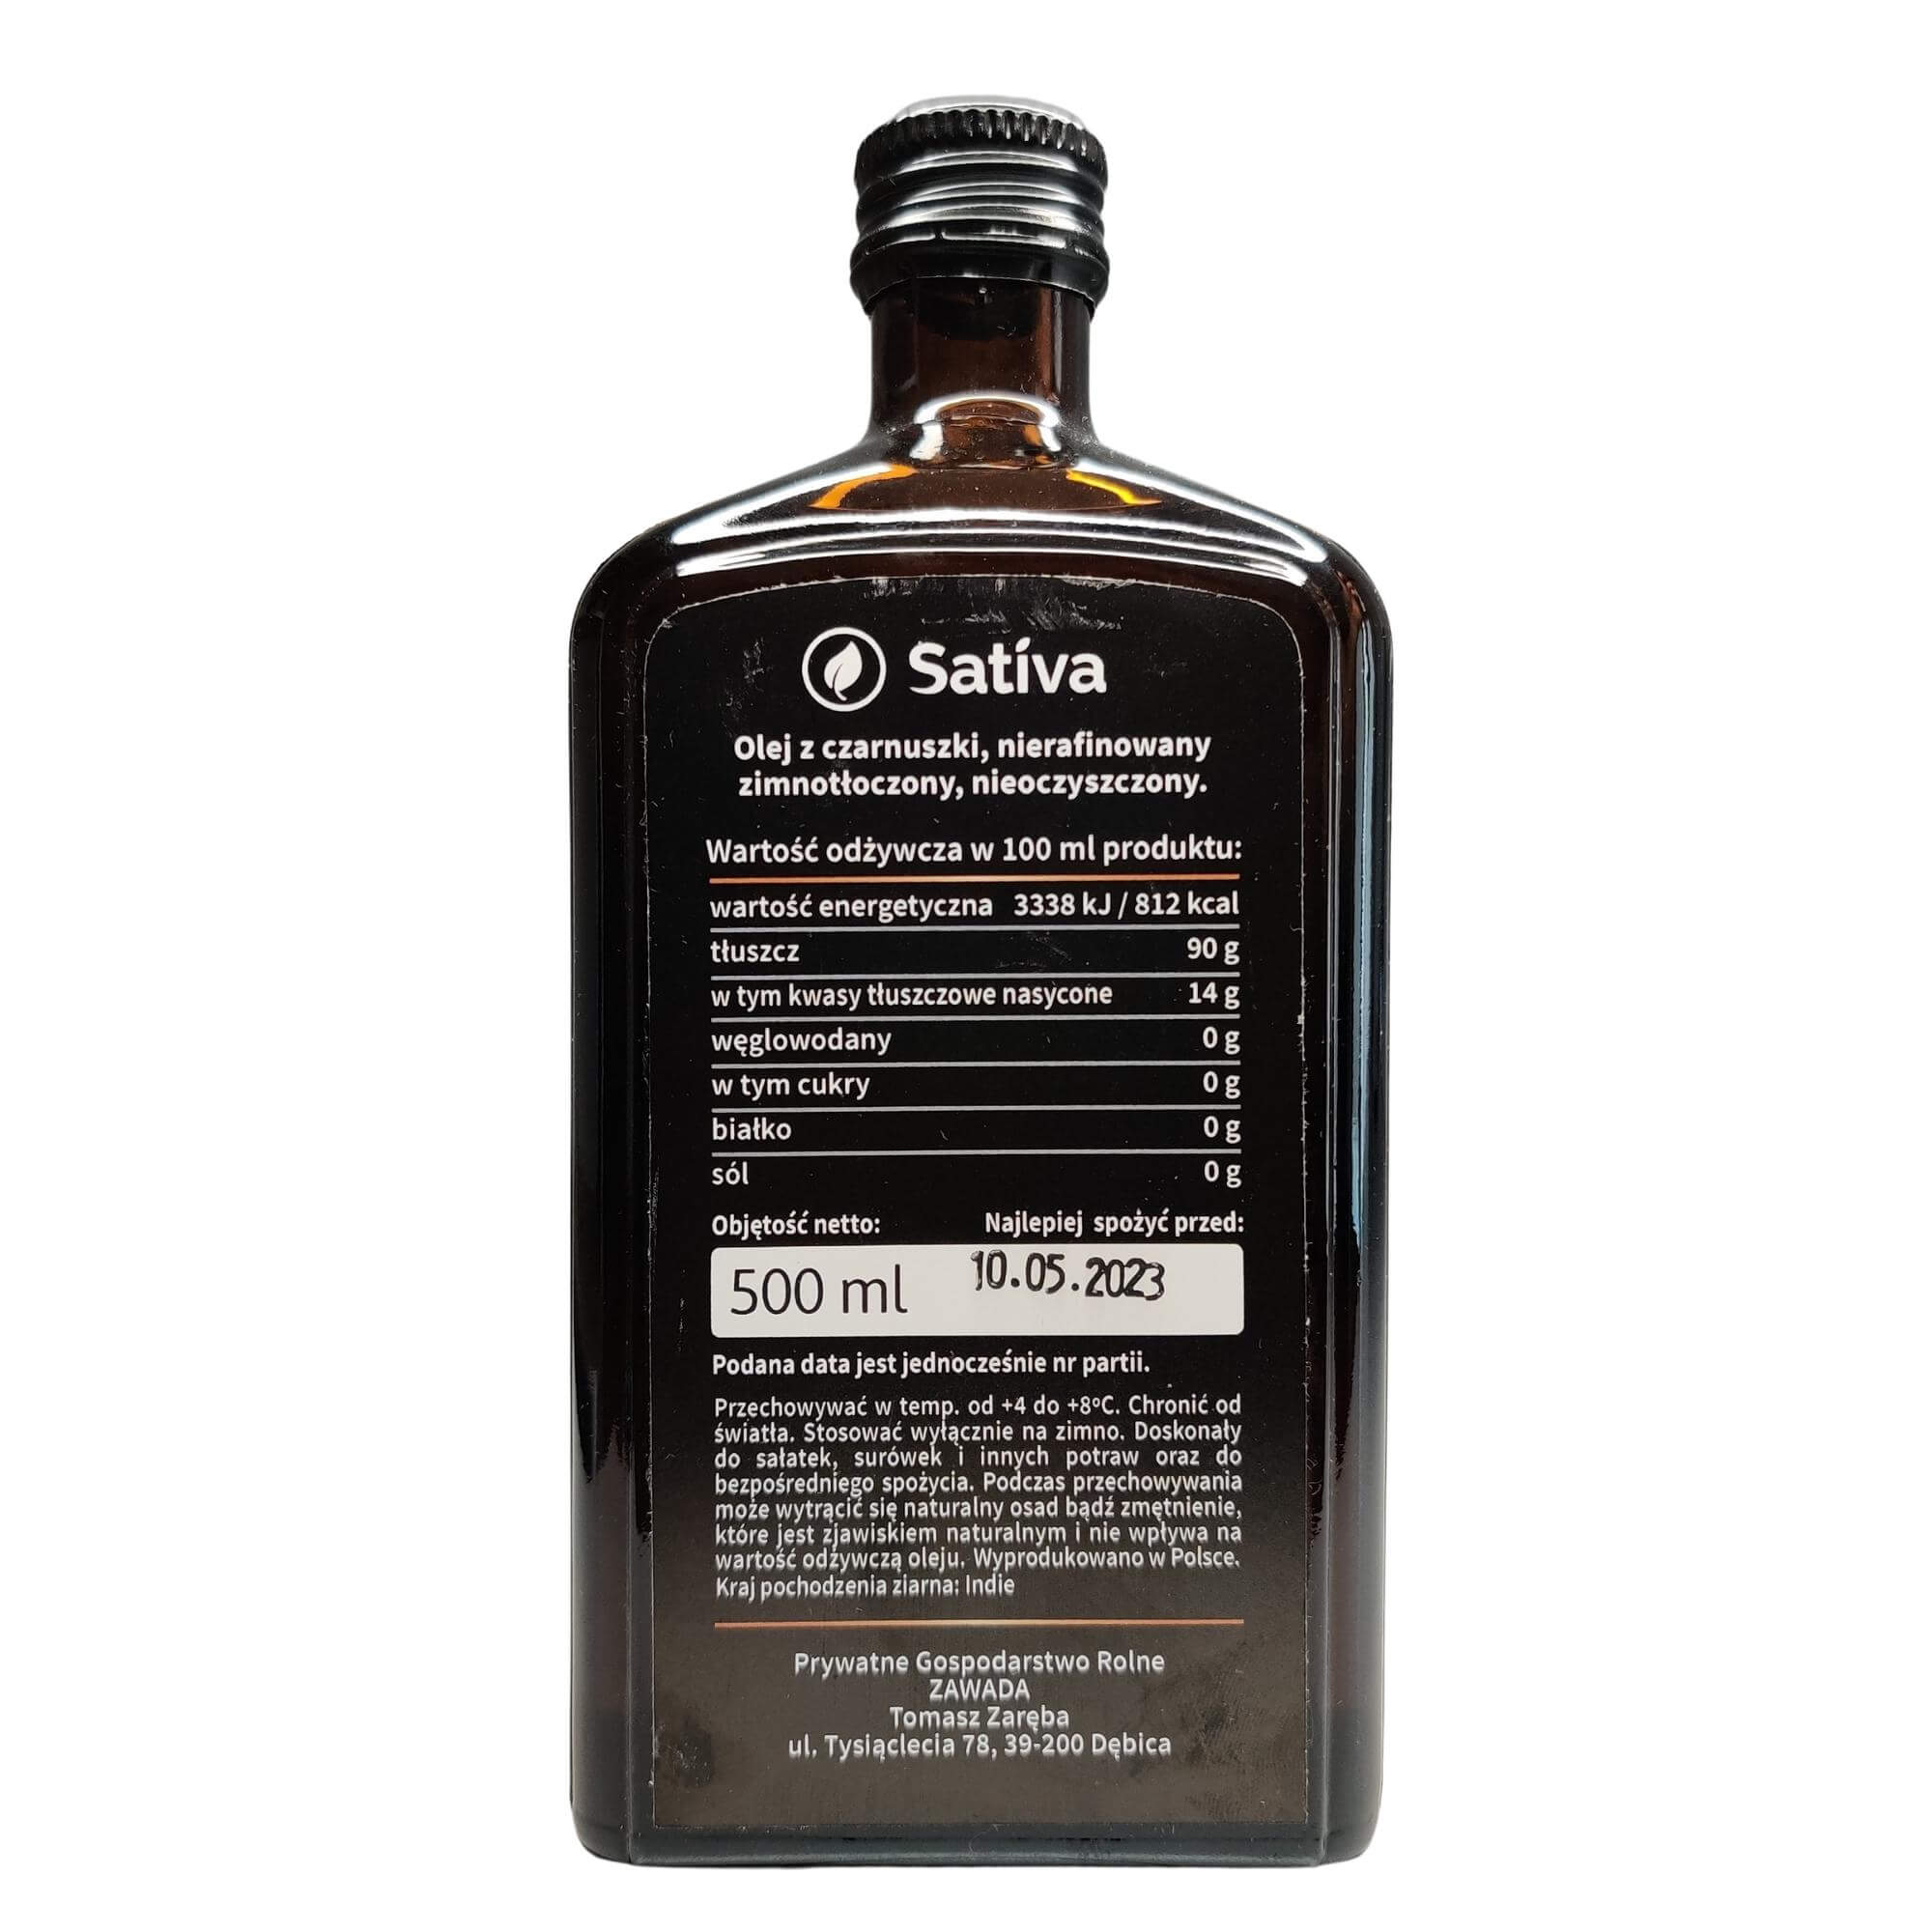 Olej z czarnuszki 500 ml - Sativa